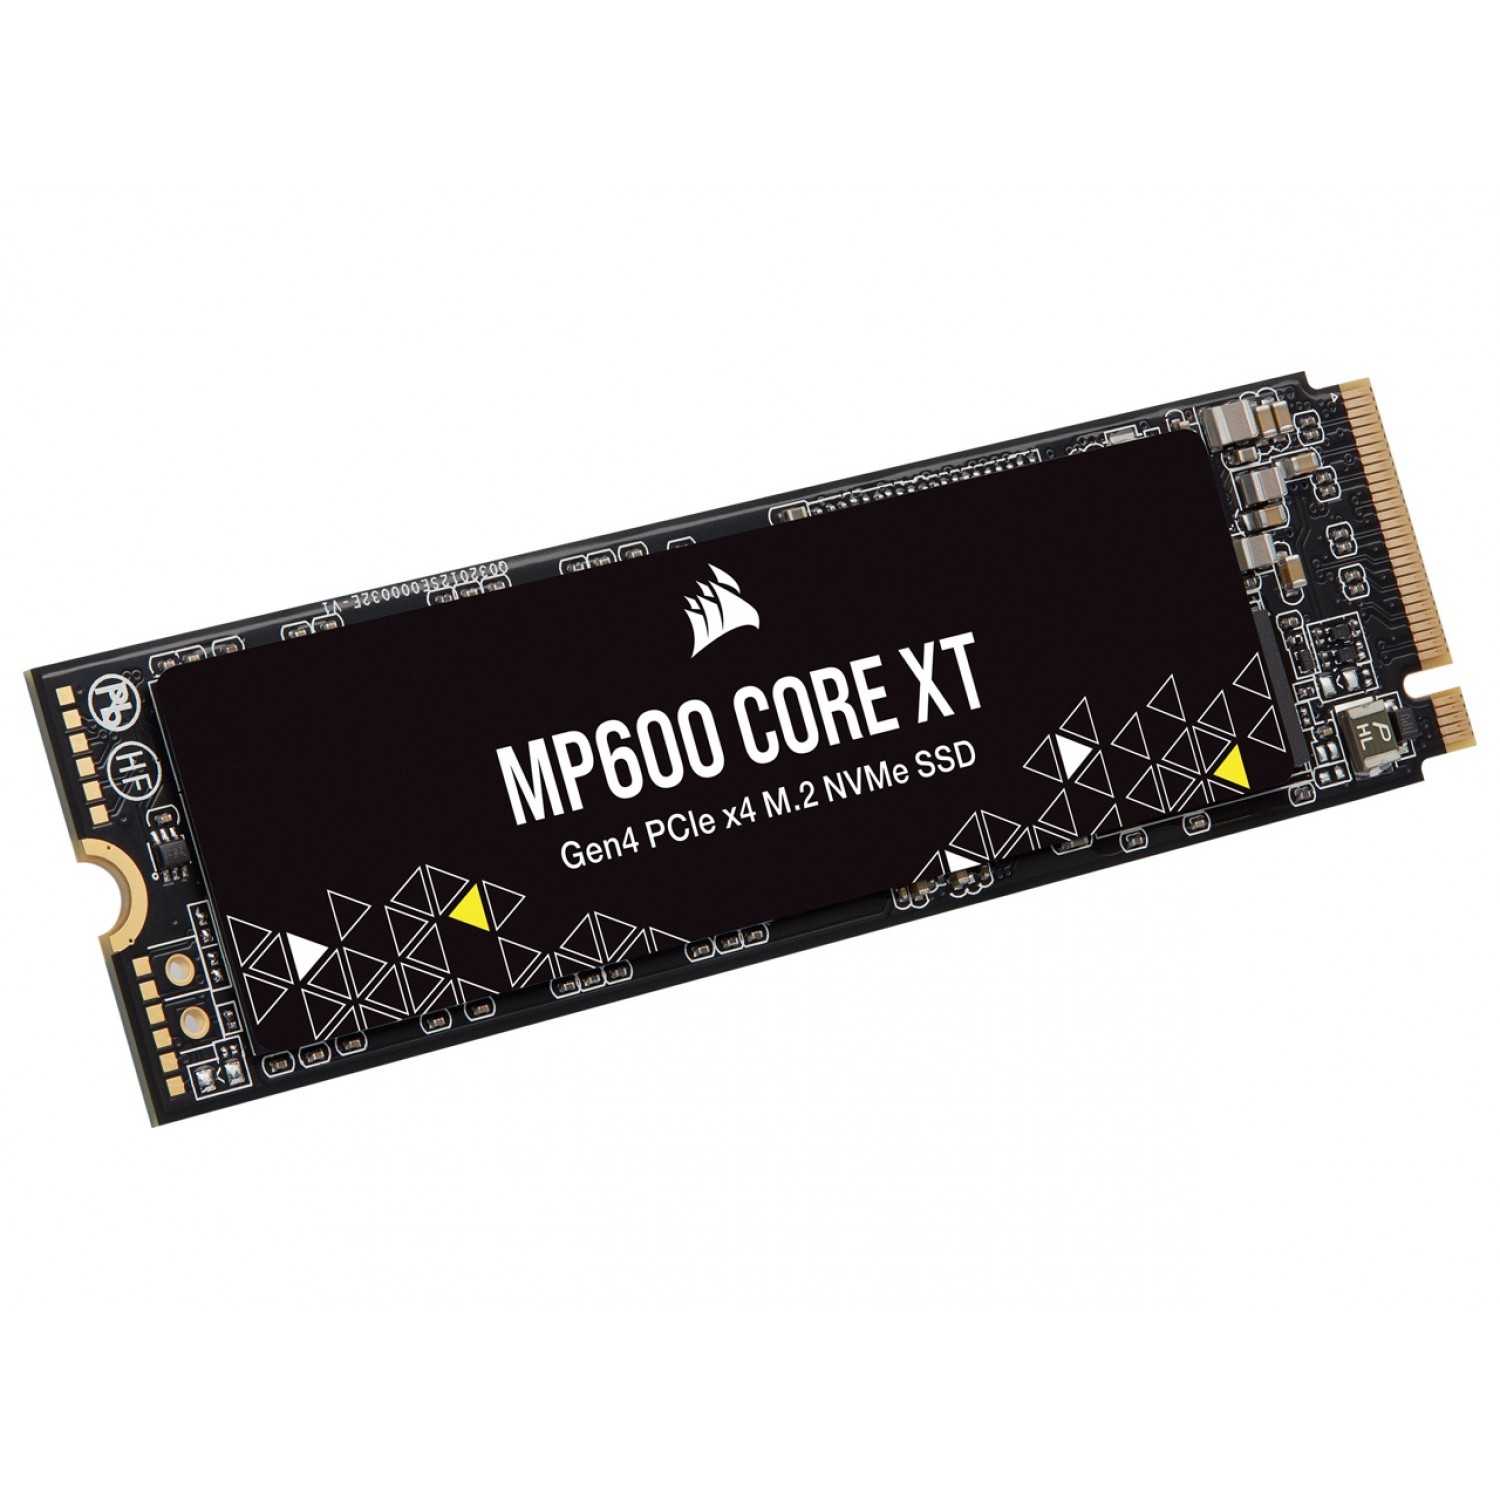 حافظه اس اس دی Corsair MP600 Core XT 1TB-1